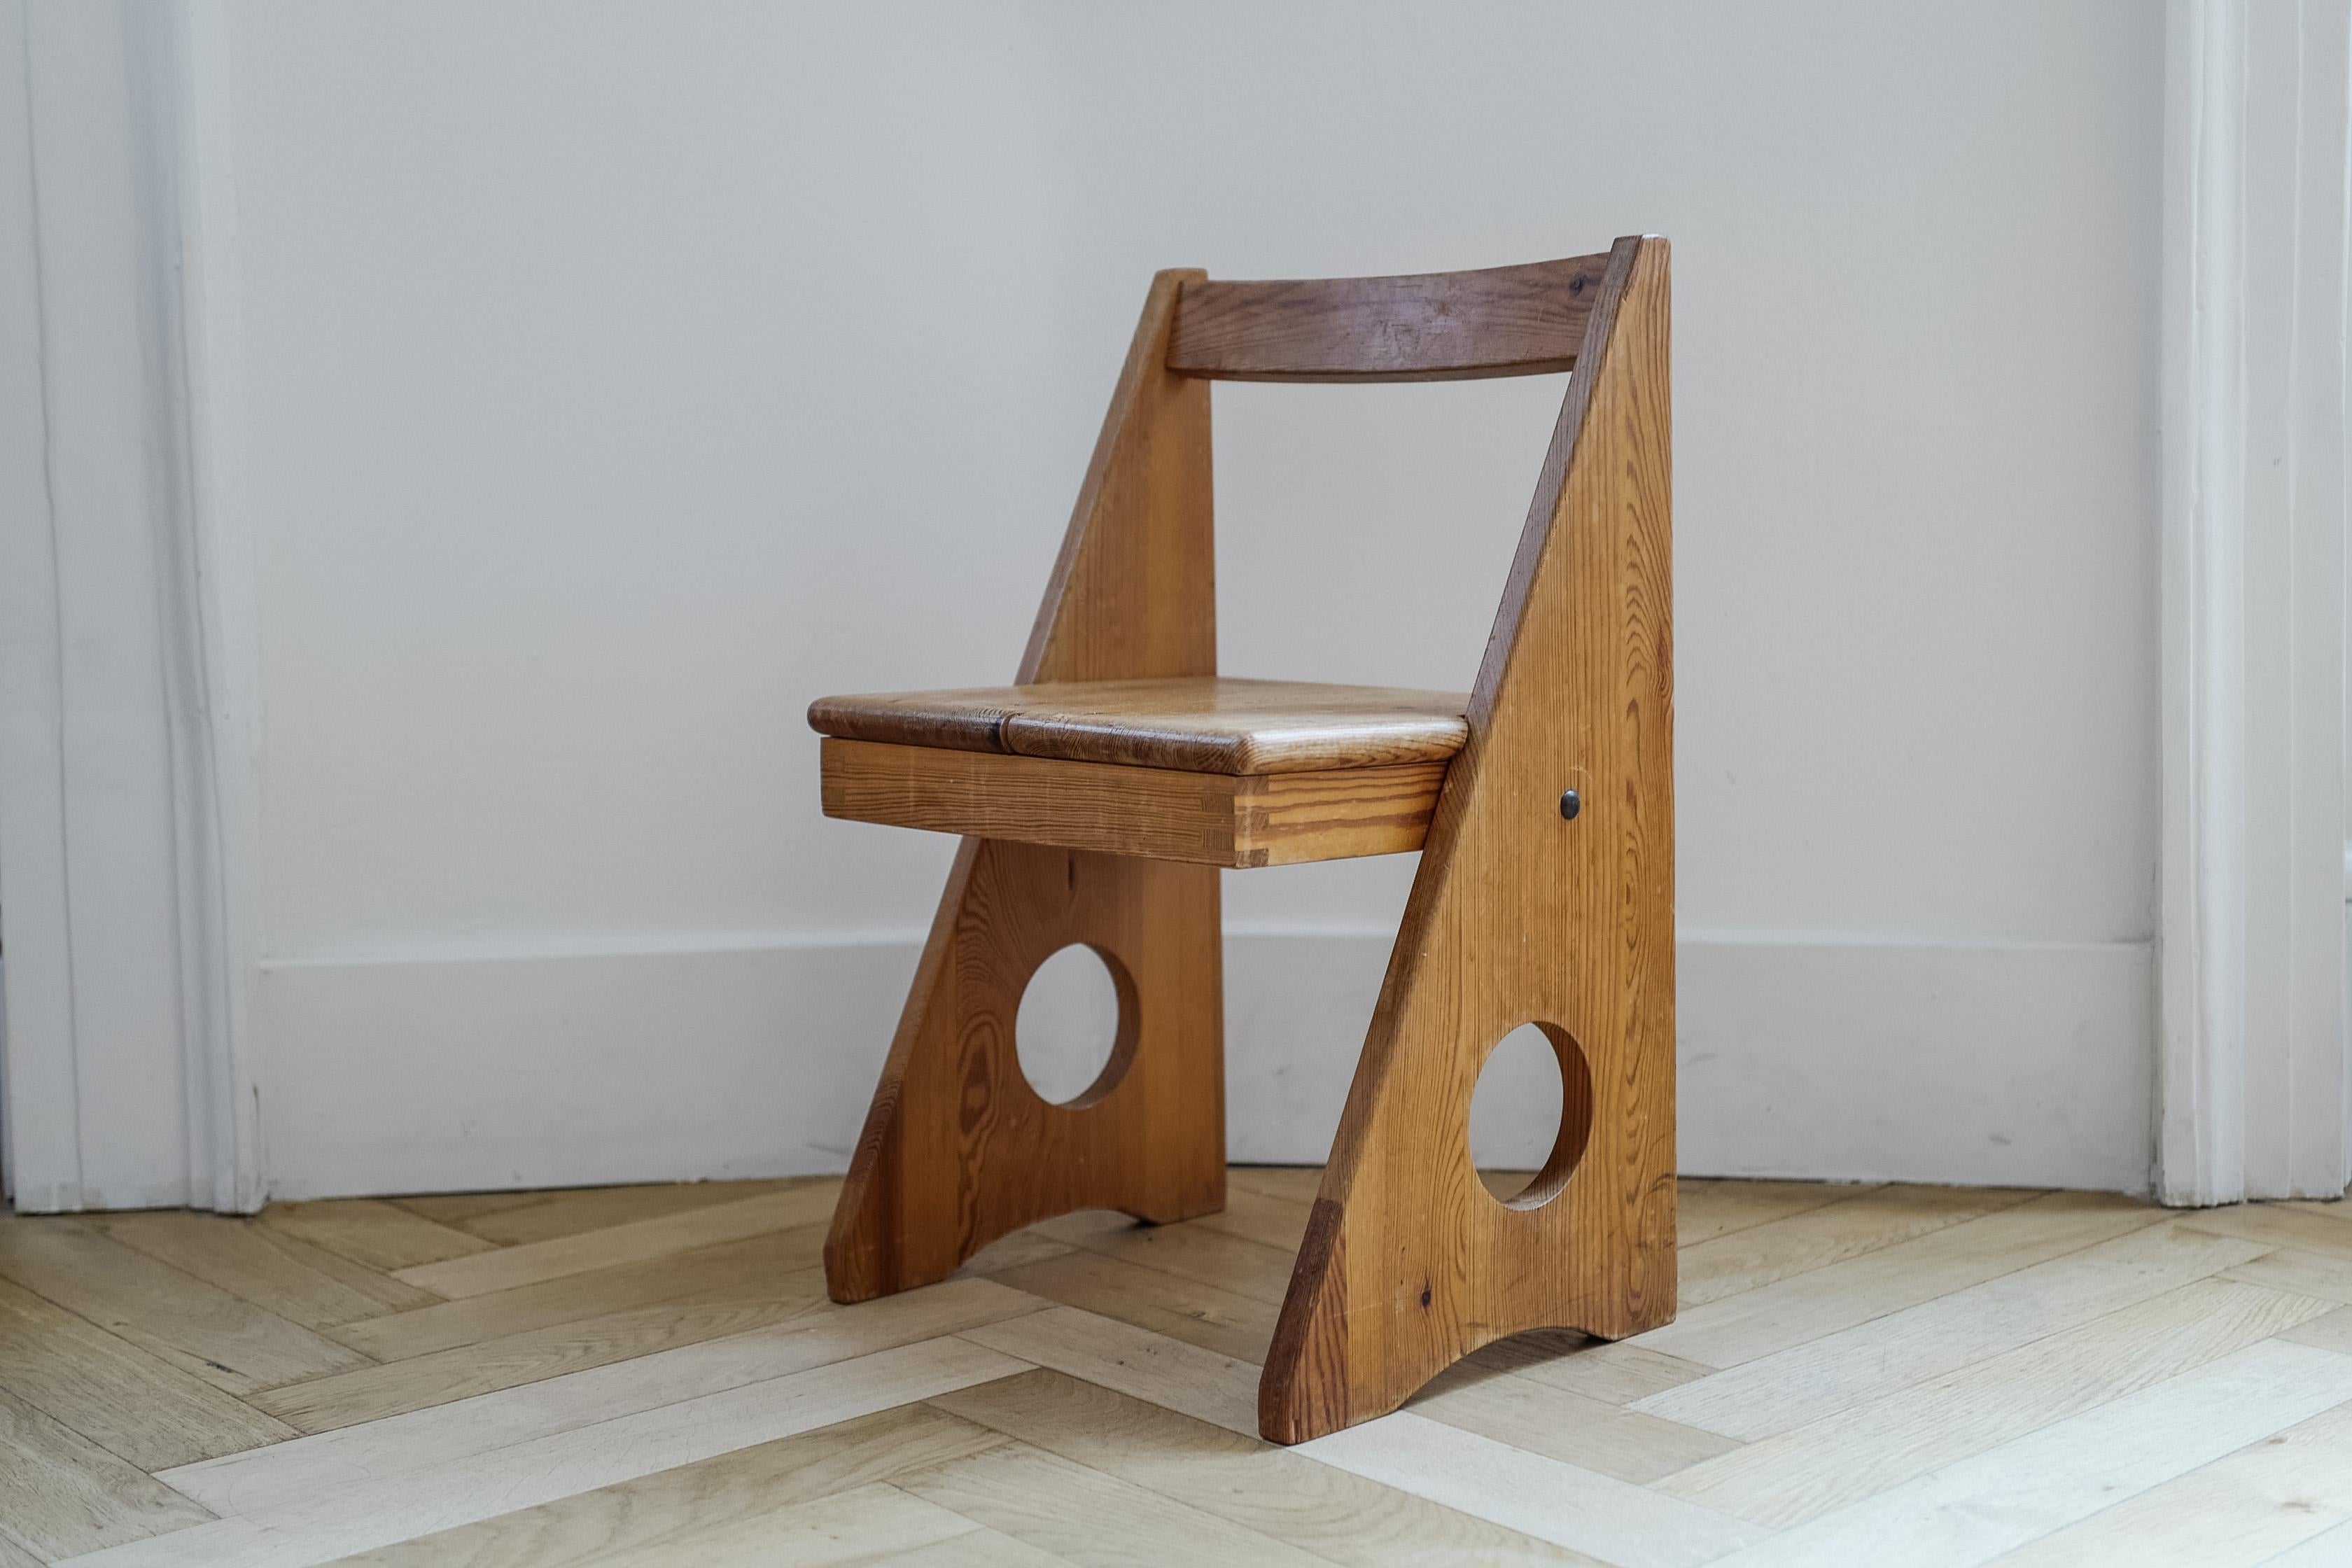 A Gilbert Marklund Pine Kids Chair from Sweden, 1970. Mid century modern children's chair.